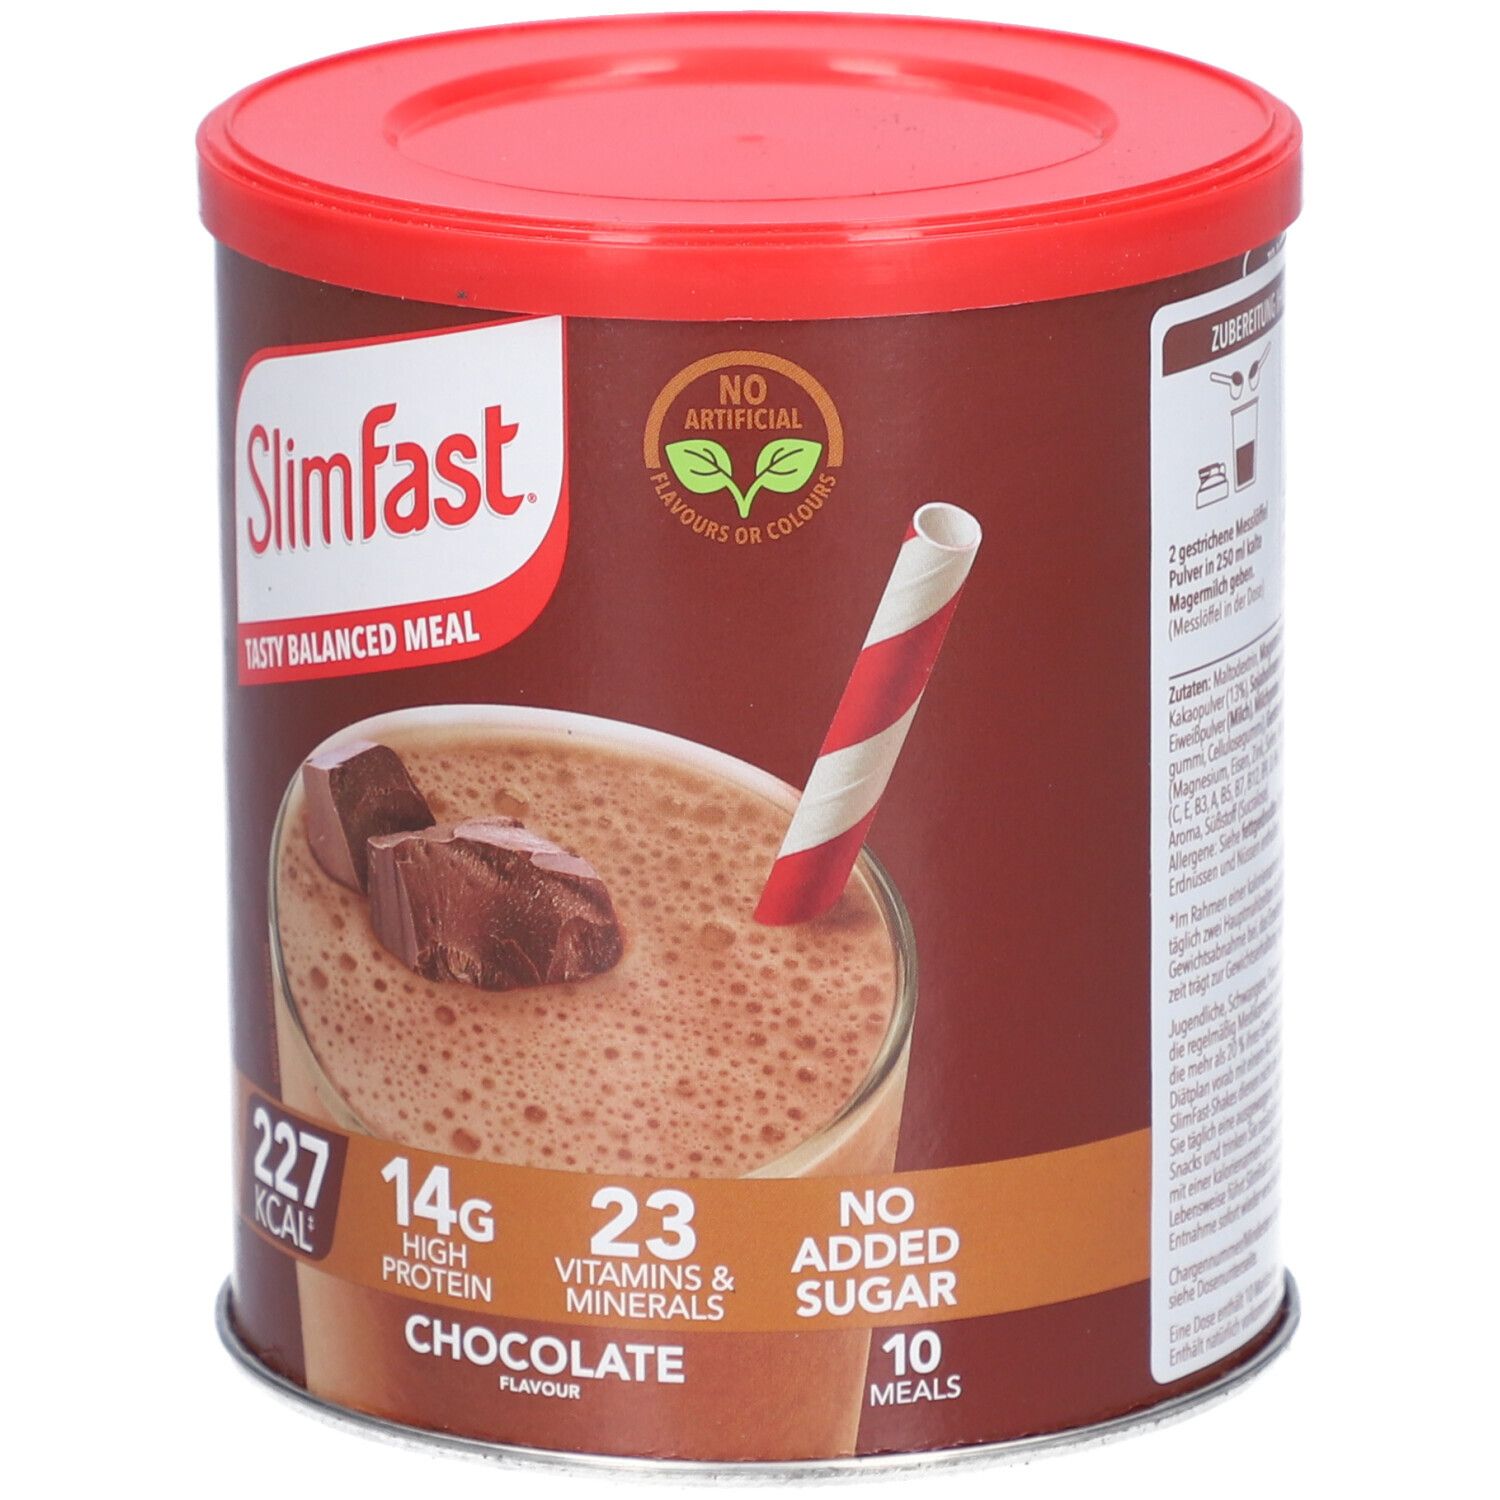 Slimfast® Schokolade Milchshake Pulver